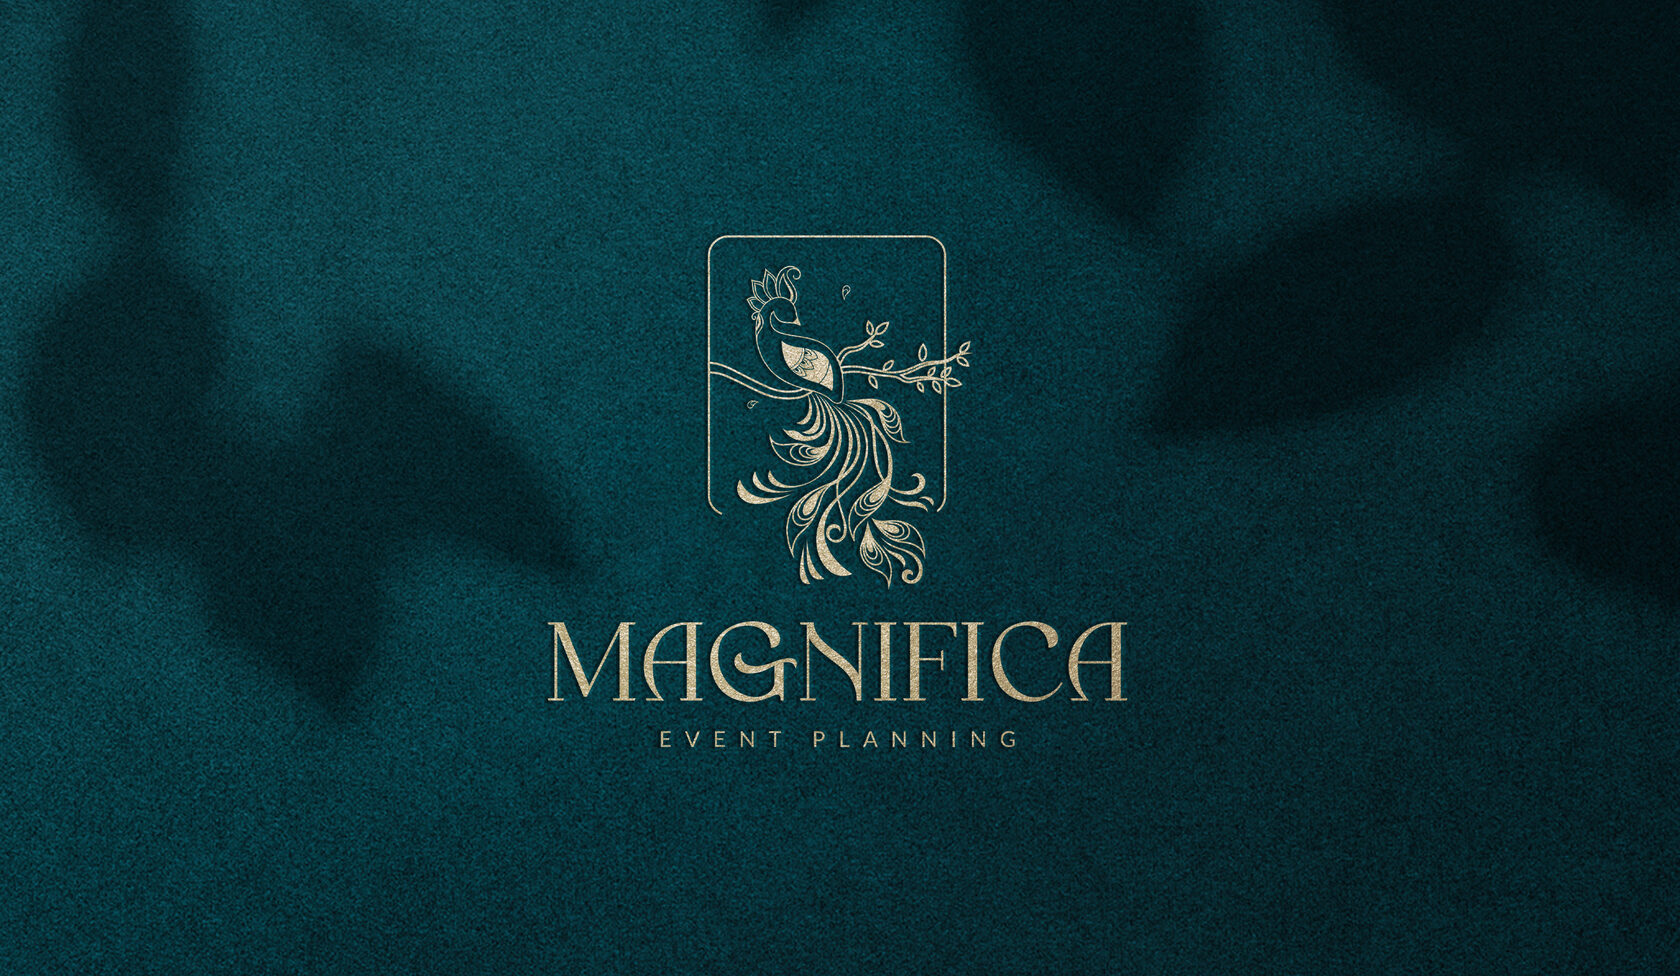 logo design for event management company